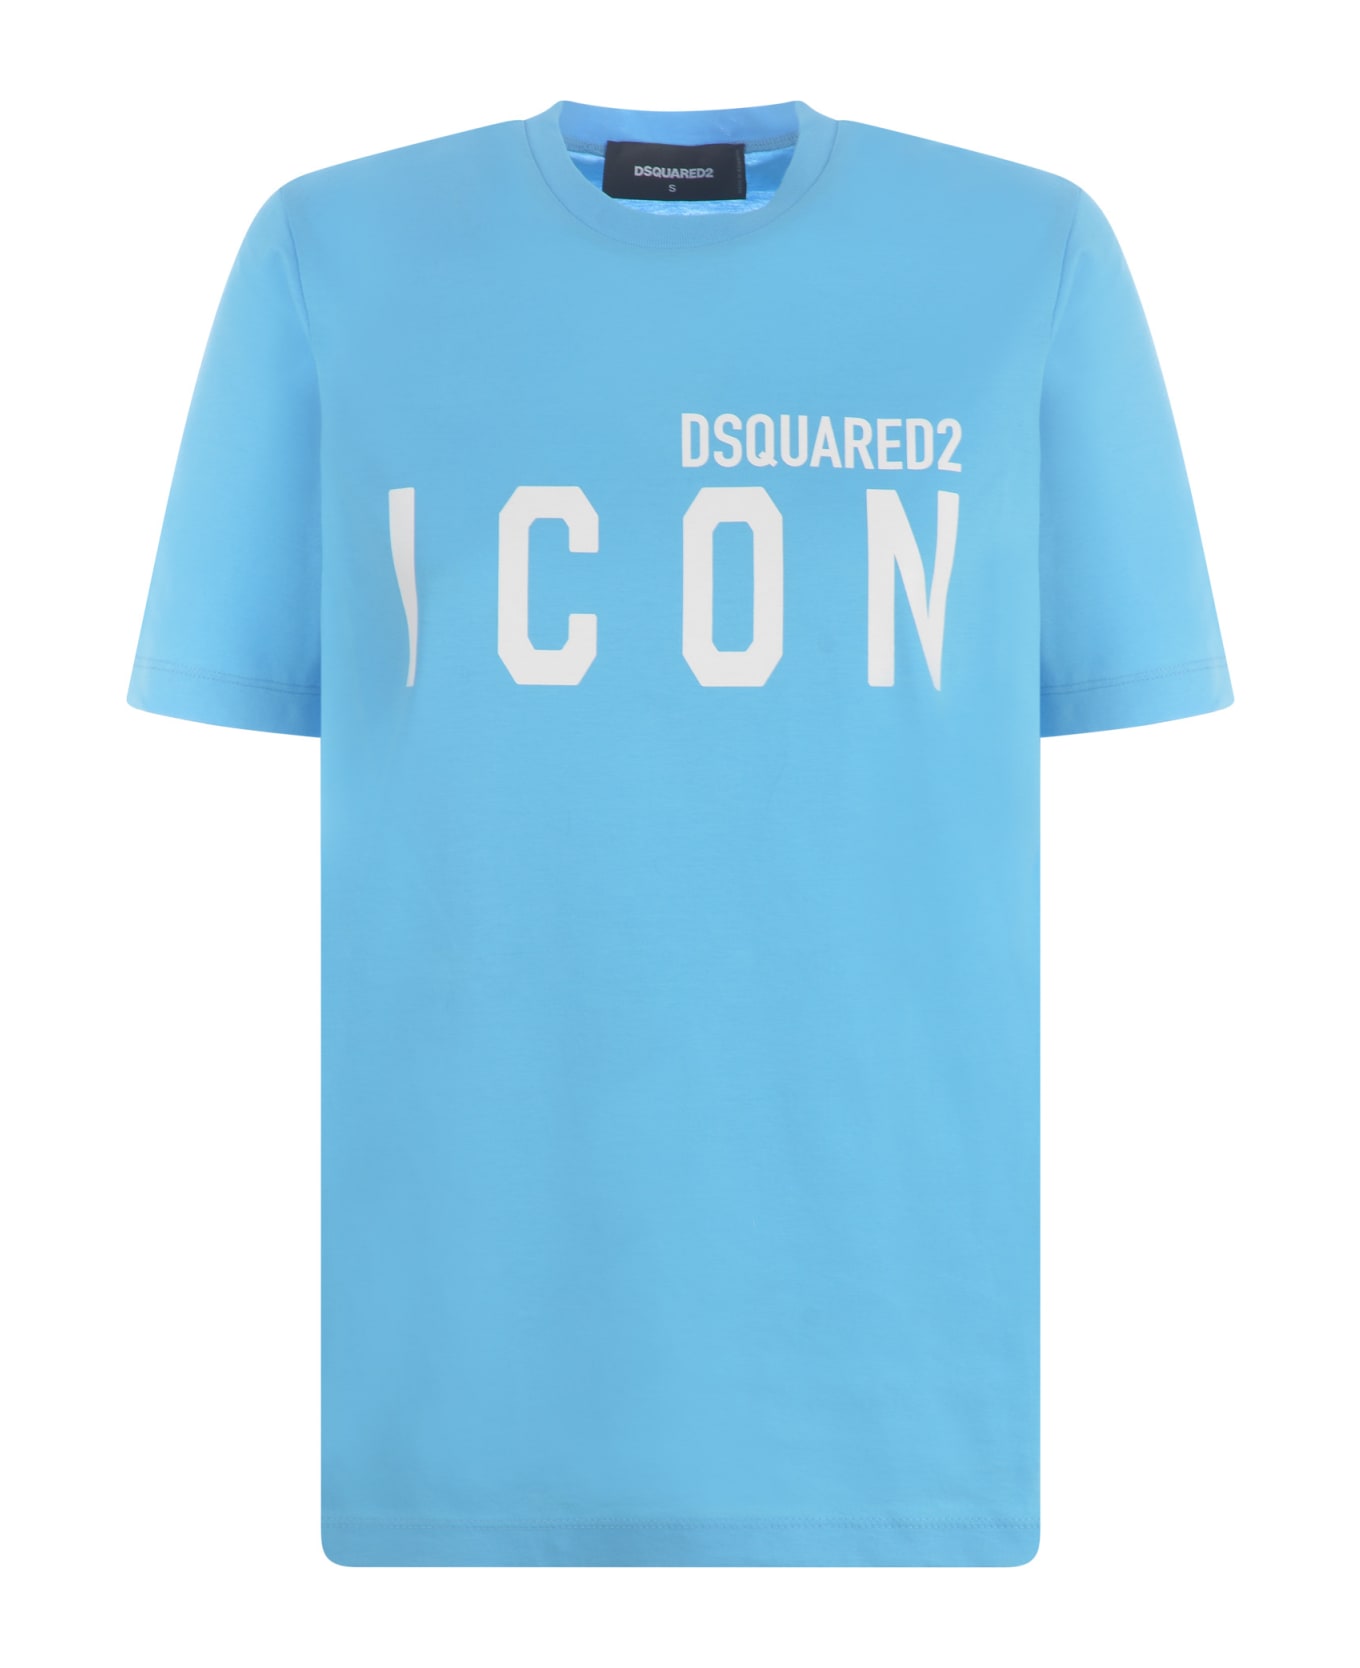 Dsquared2 T-shirt Dsquared2 'icon' In Cotton - Blue miami